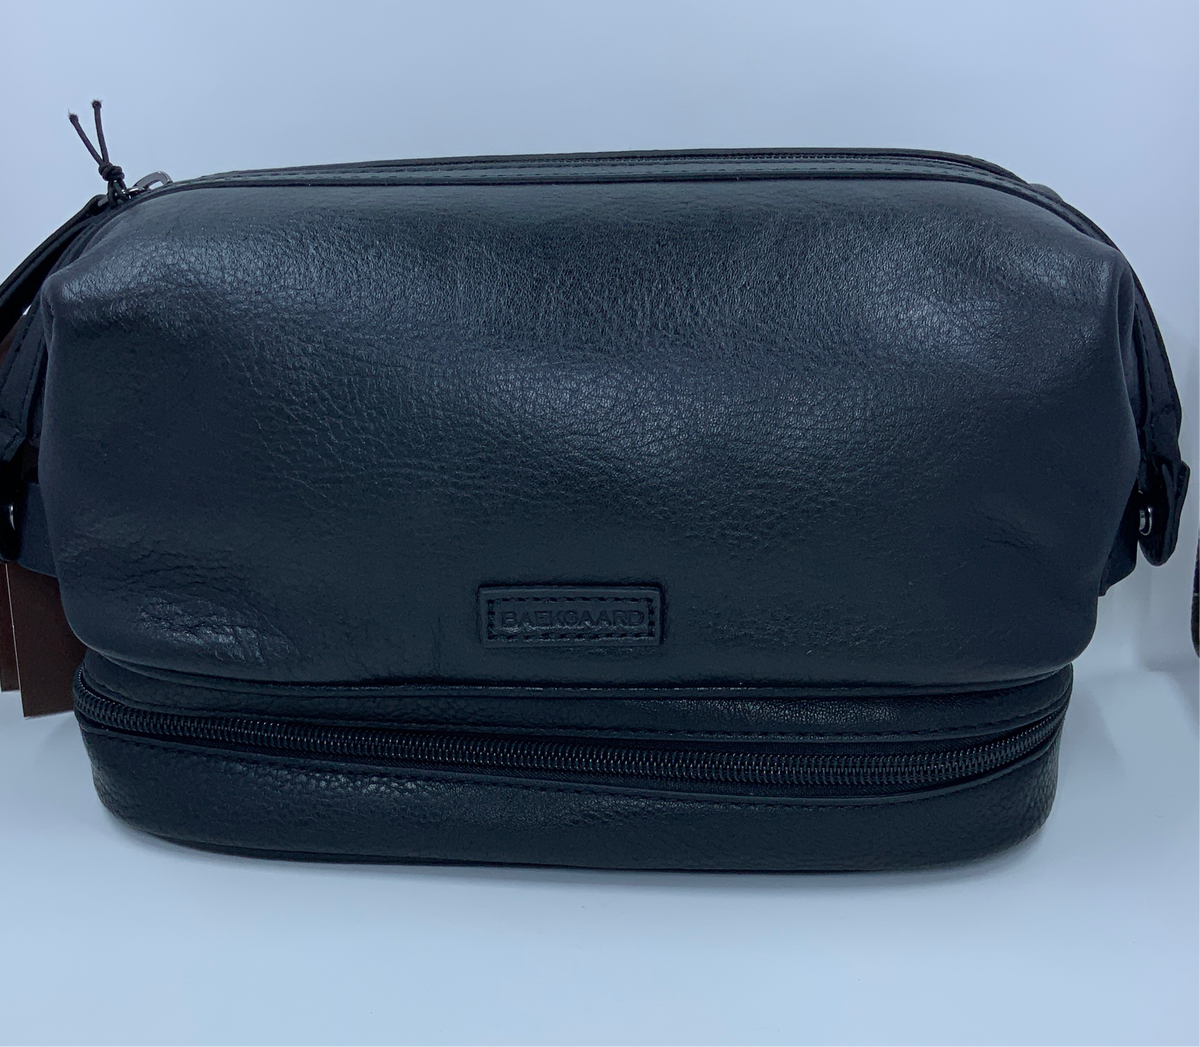 Baekaard Leather Travel Kit